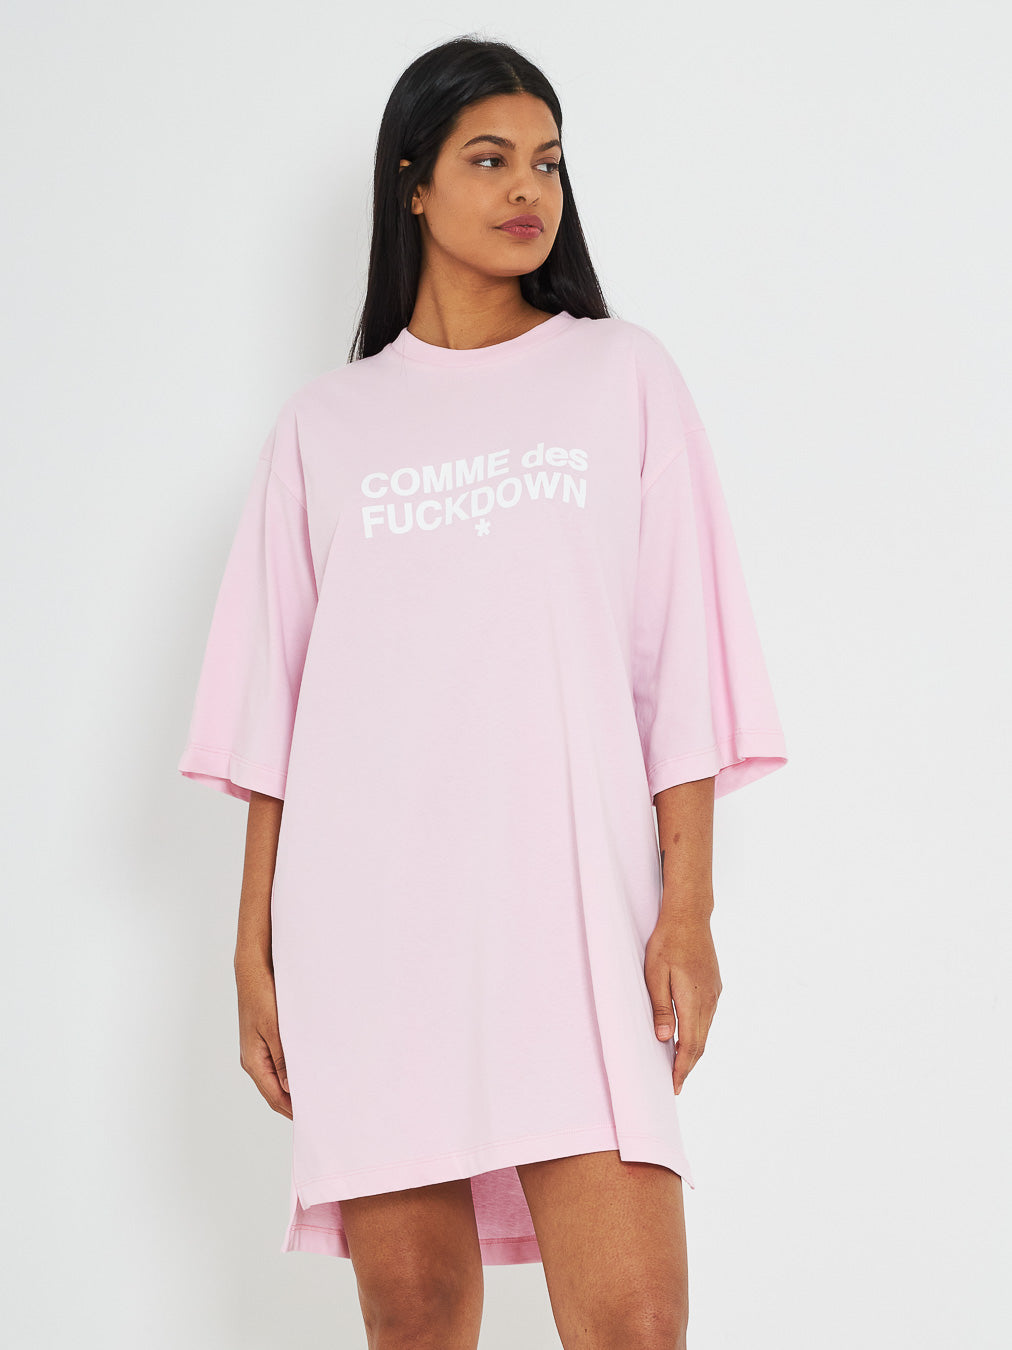 Comme Des Fuckdown t shirt-abito rosa con stampa